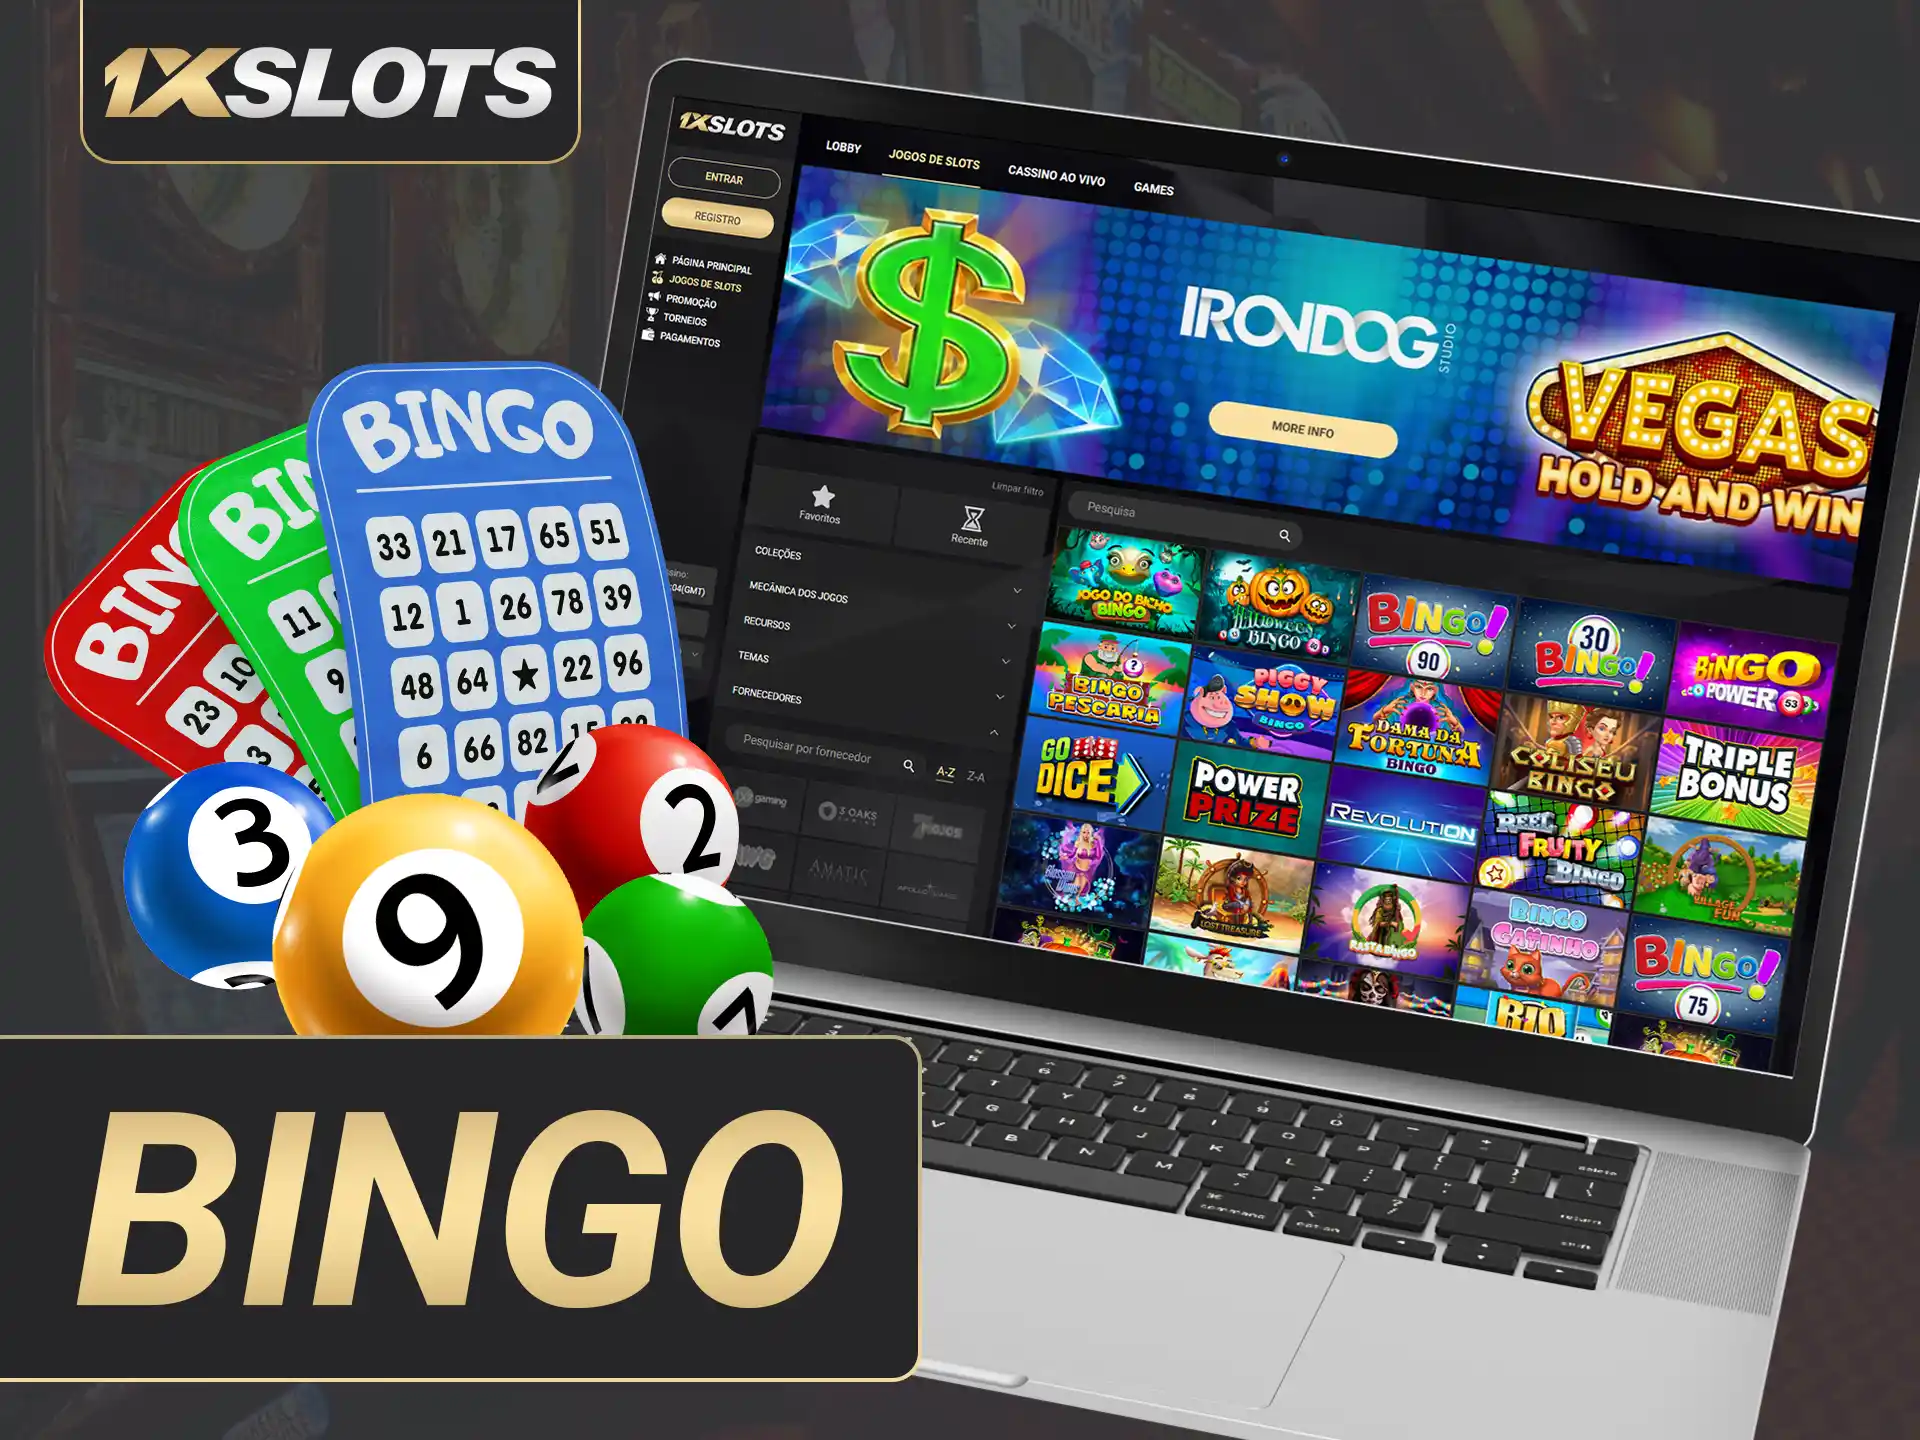 O emocionante jogo de bingo é apresentado no cassino 1xSlots.